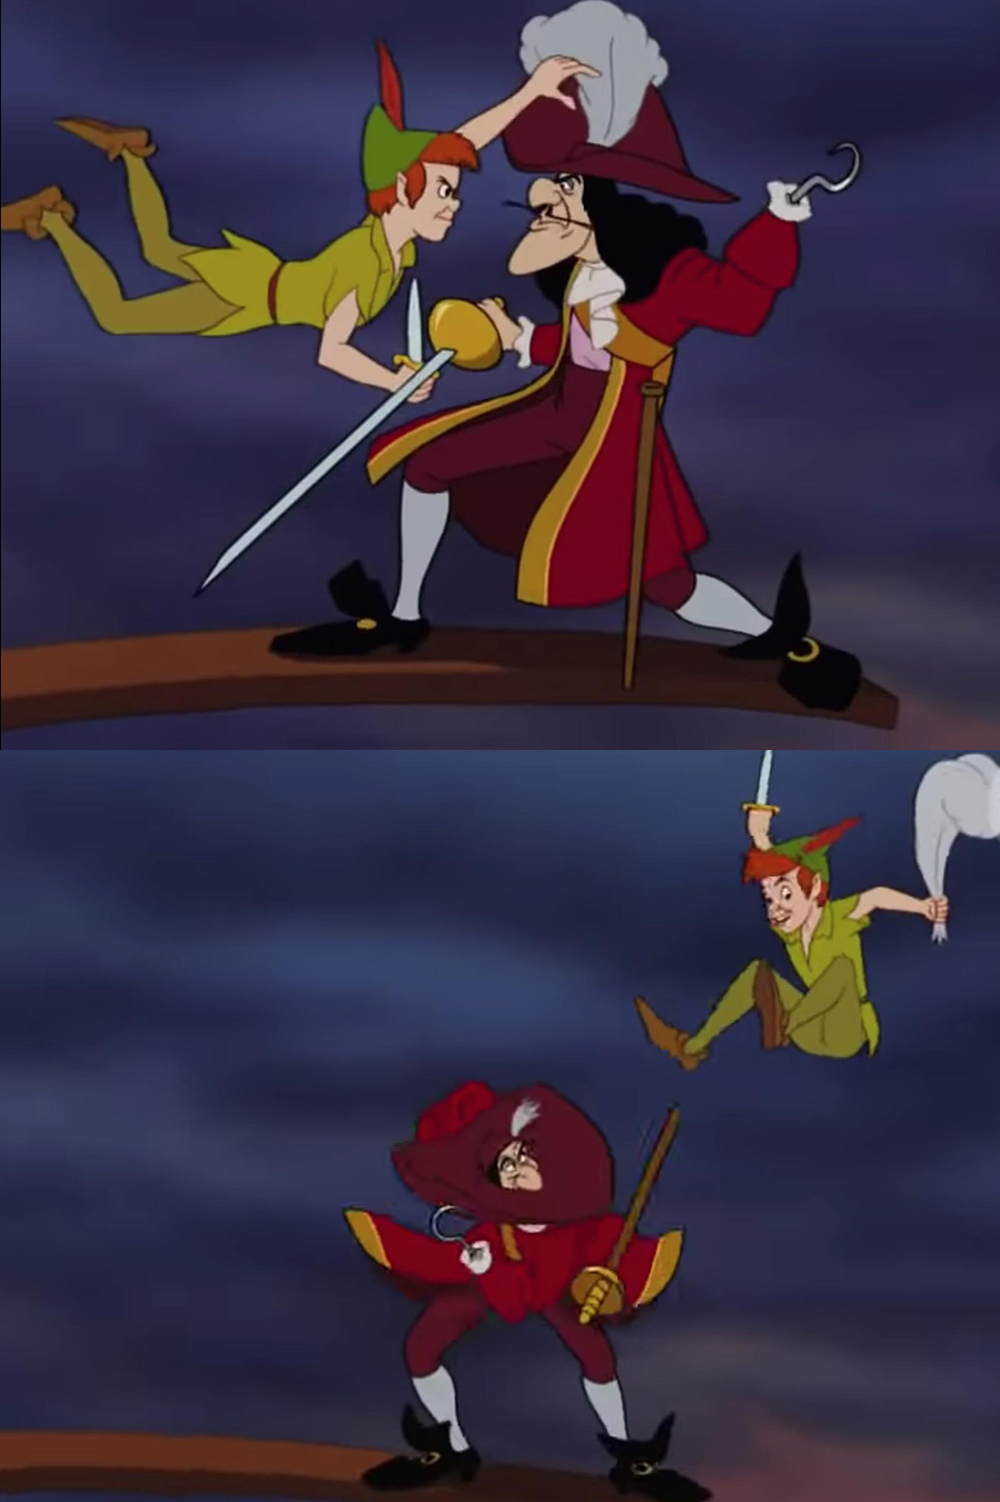  Đang giao chiến mà Hook cất vũ khí thảo nào thua Peter Pan (Ảnh Disney)